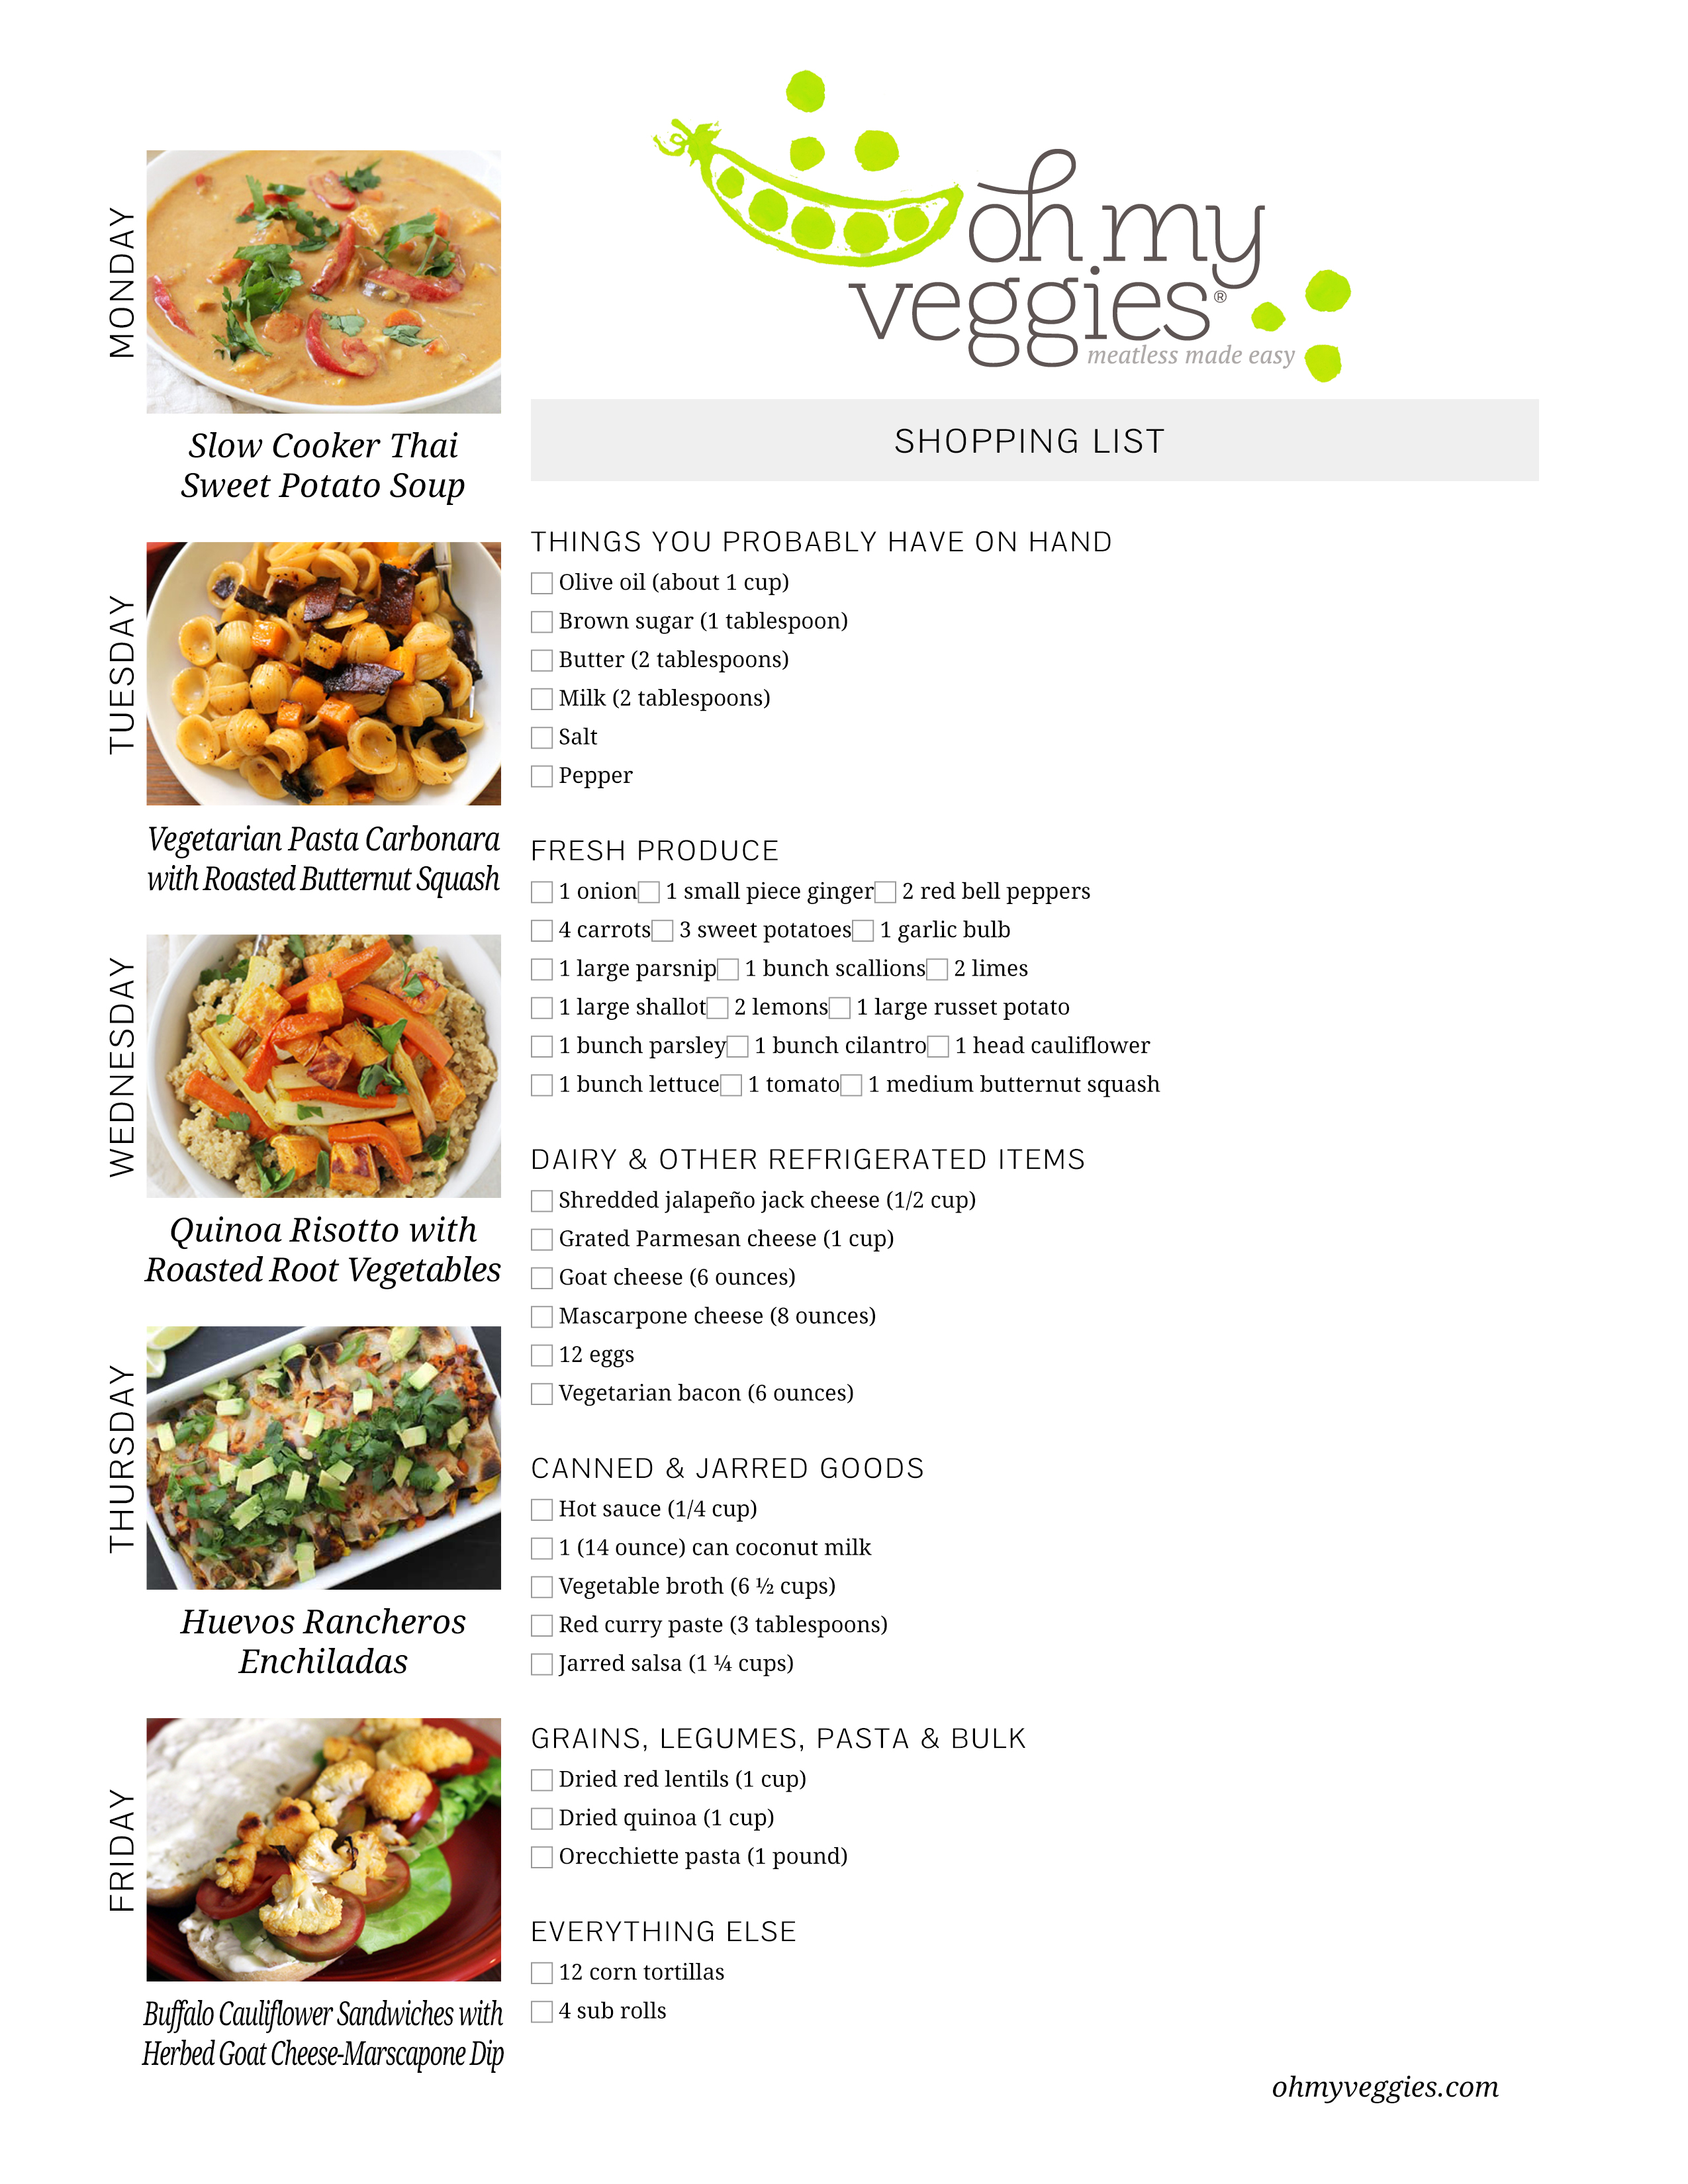 Vegetarian Meal Plan